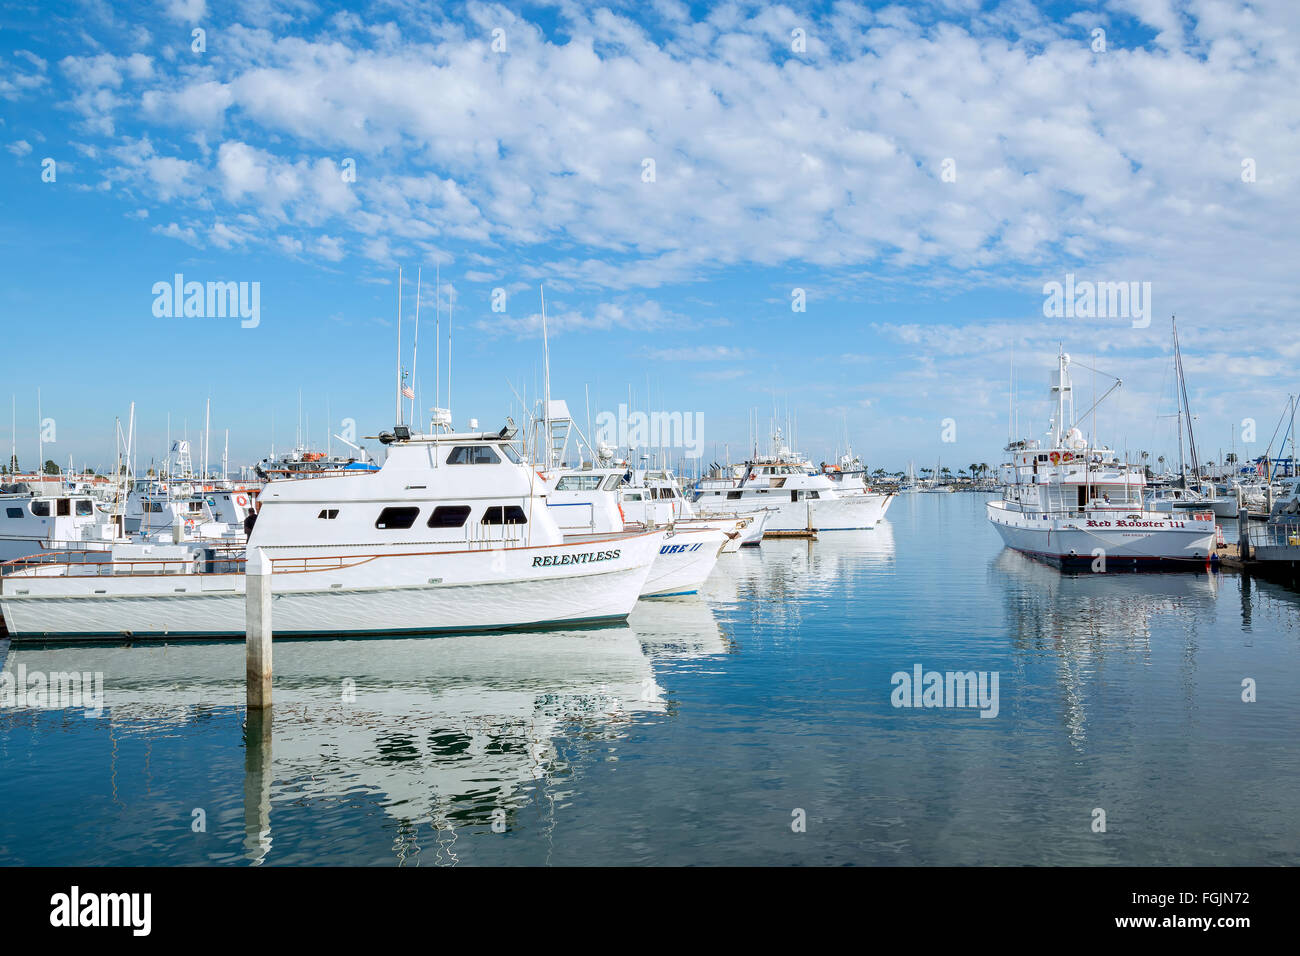 Docked boats at Shelter island Marina in Point Loma, California Stock Photo